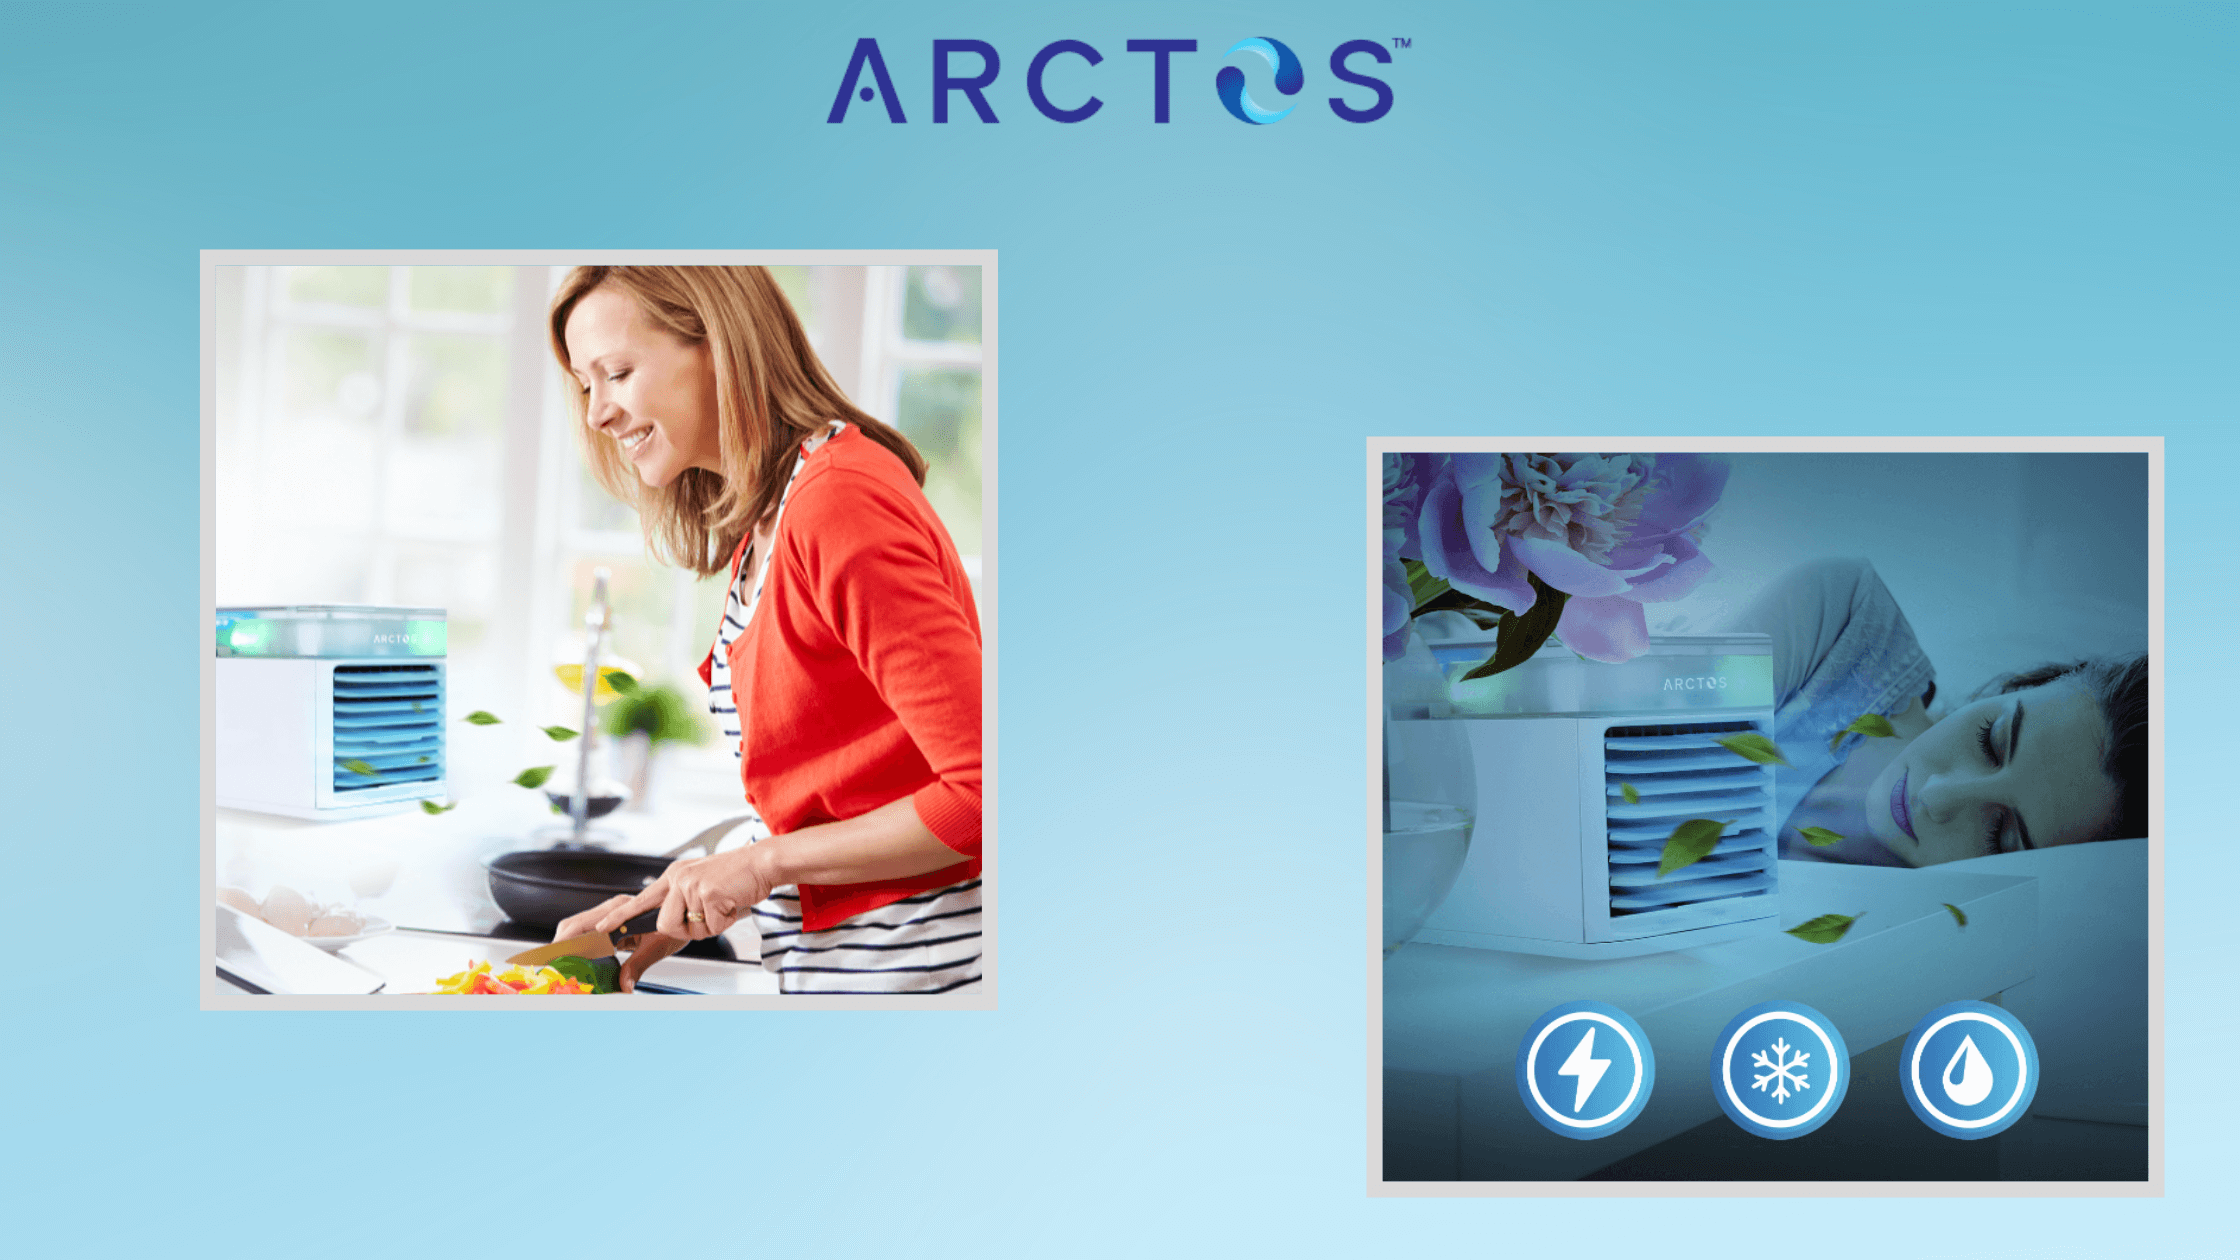 Arctos Portable AC Benefits